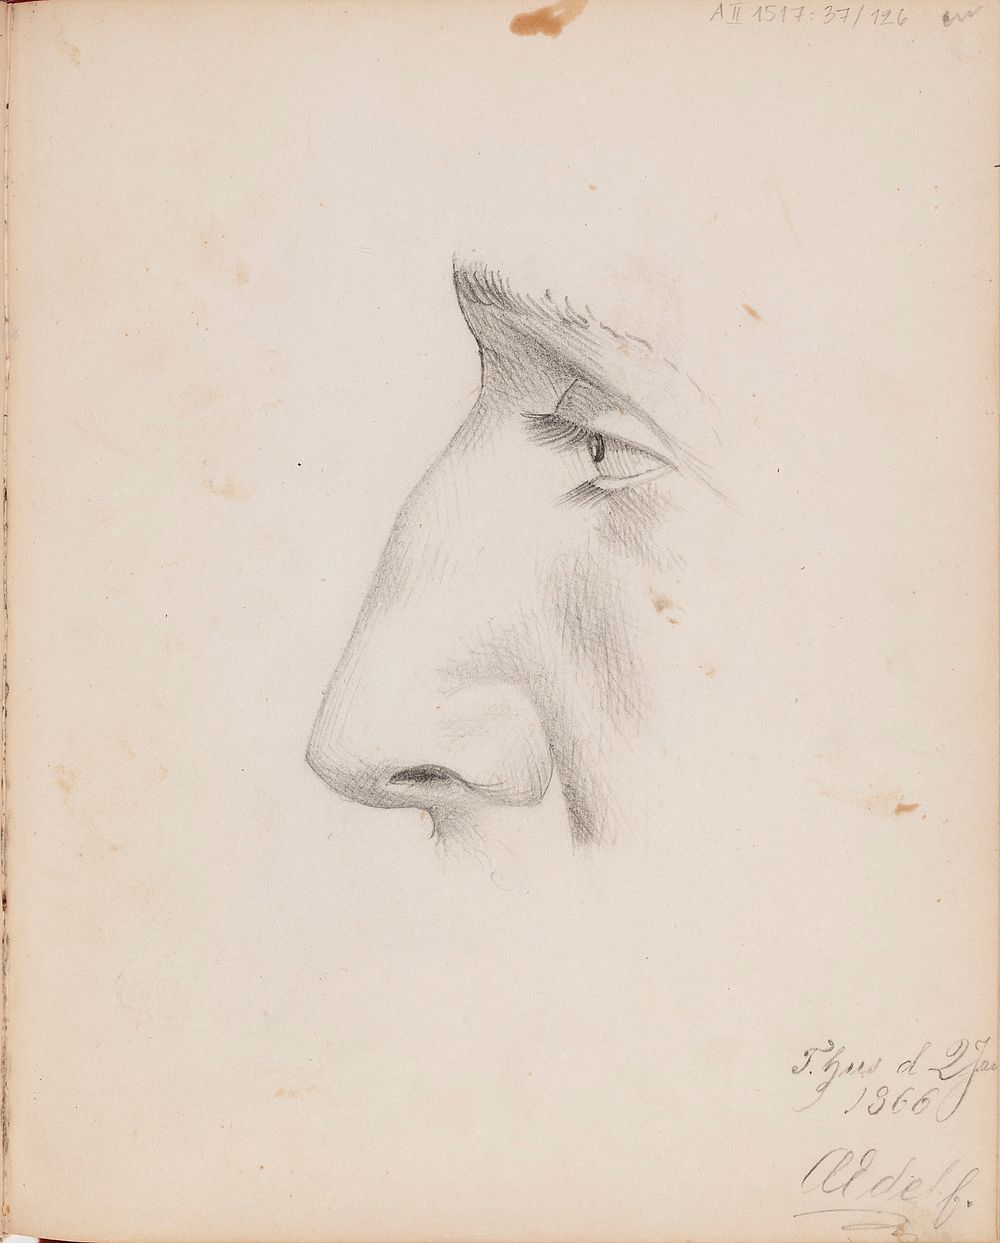 Miehen kasvot sivulta, silm&auml; ja nen&auml;. merkitty: t. hus d 2 ja / 1866 / aedelf., 1863 - 1866 part of a sketchbook…